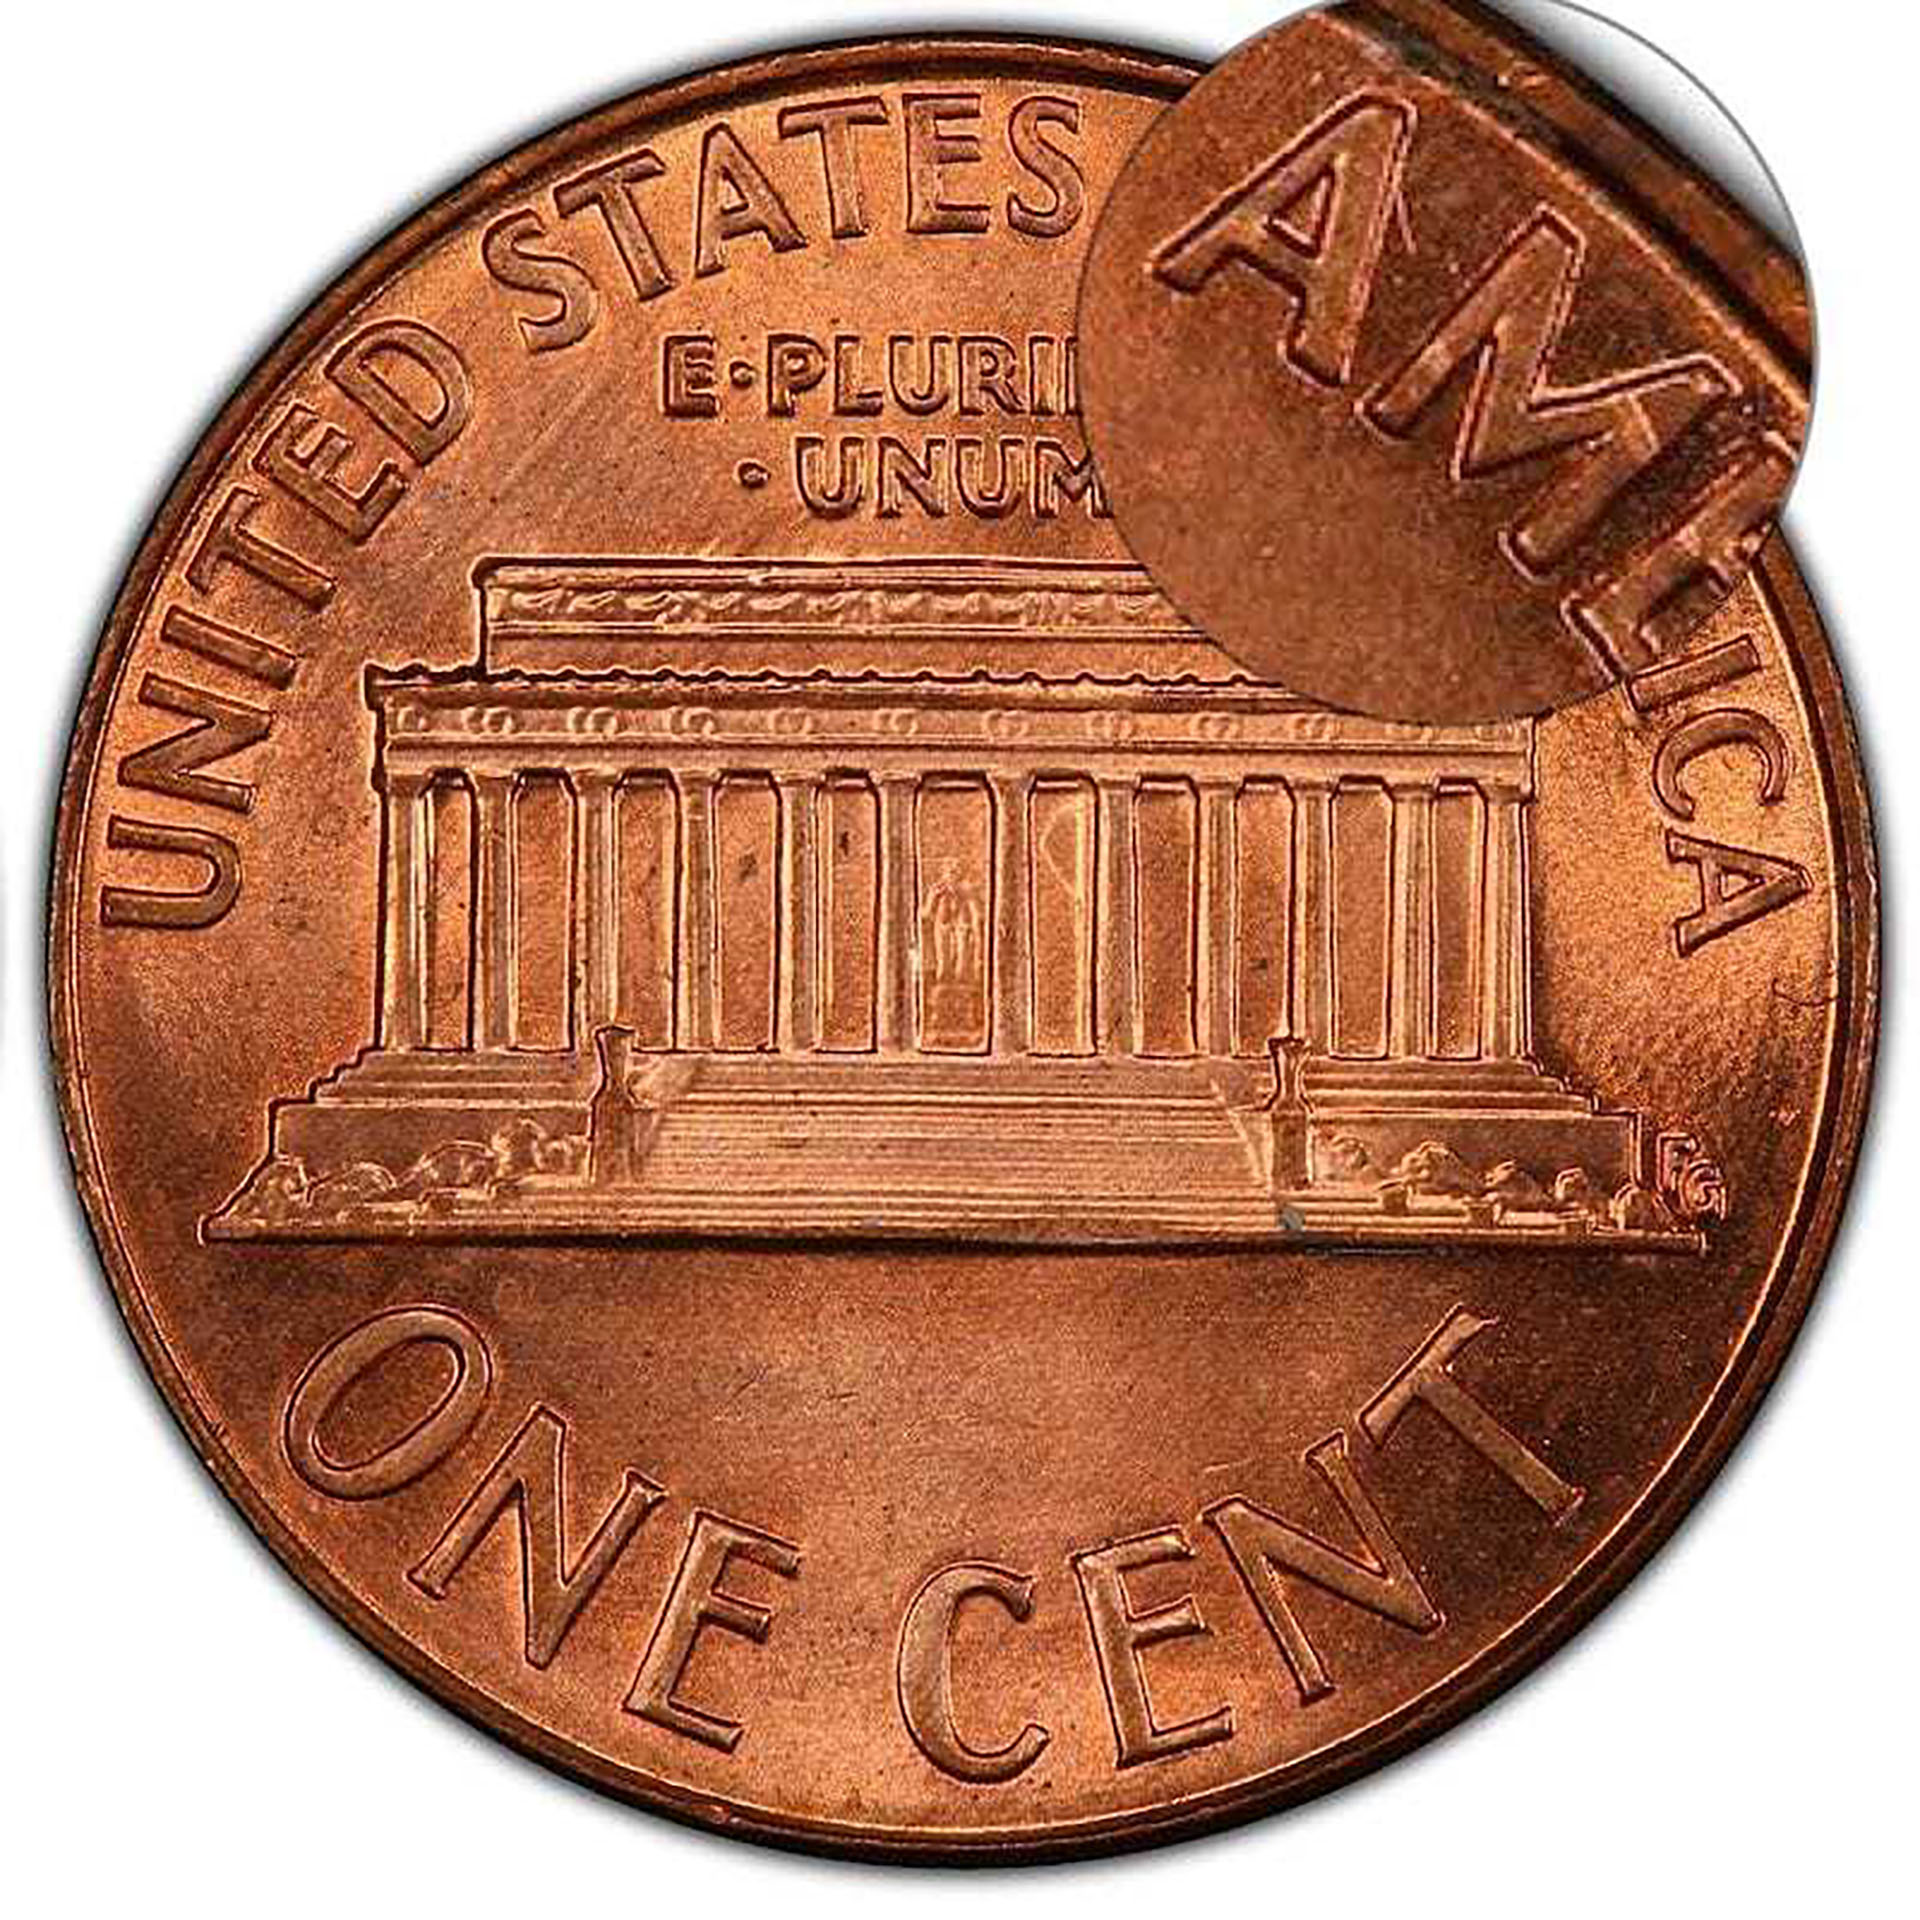 Una disposición rara de las letras cambió el valor de esta moneda. Fuente: geekycamel